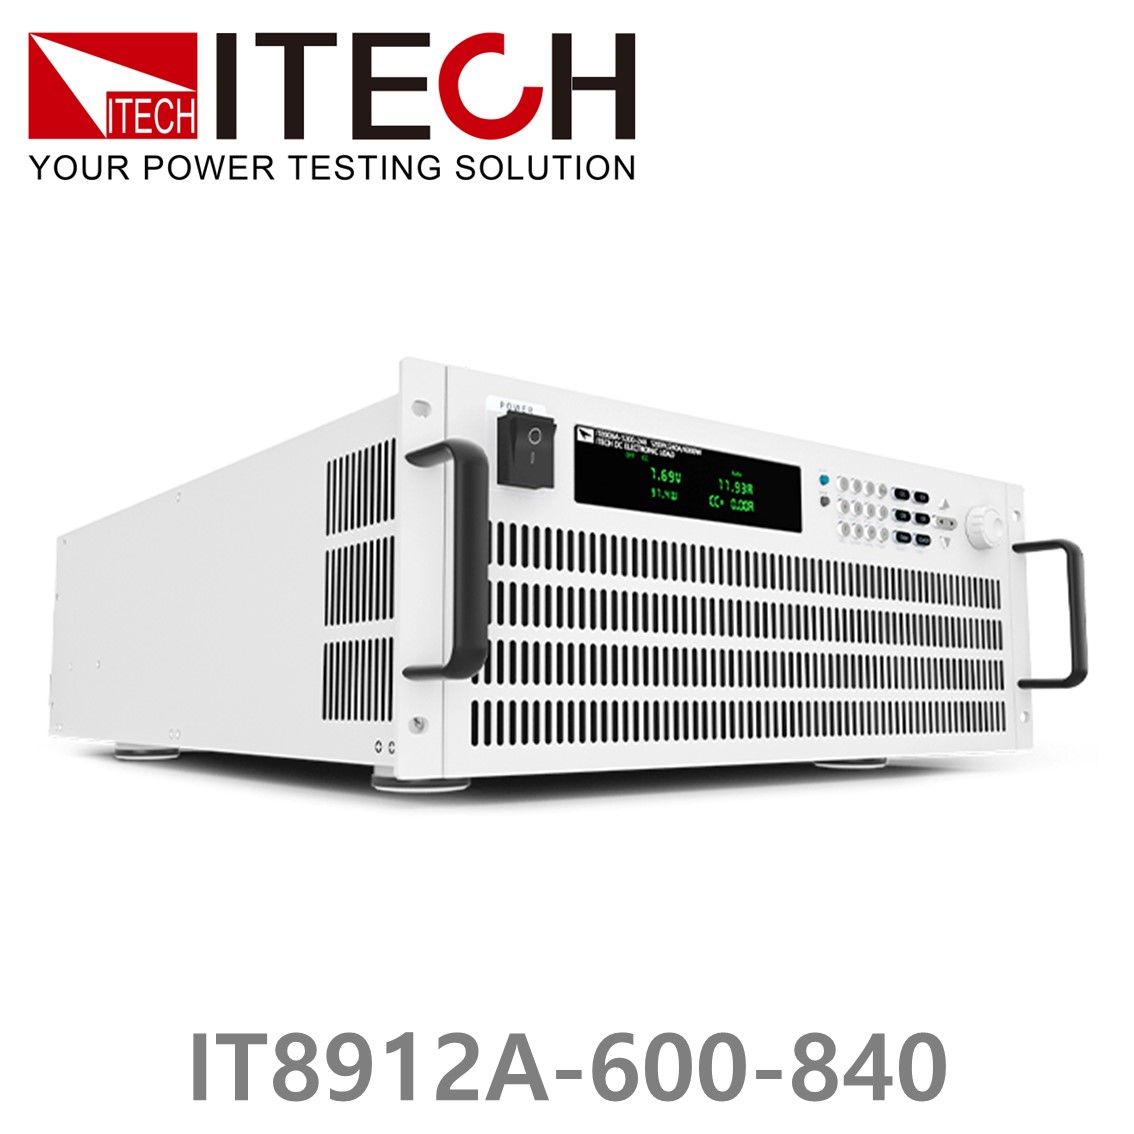 [ ITECH ] IT8912A-600-840  고성능 고전력 DC 전자로드 600V/840A/12kW (8U)